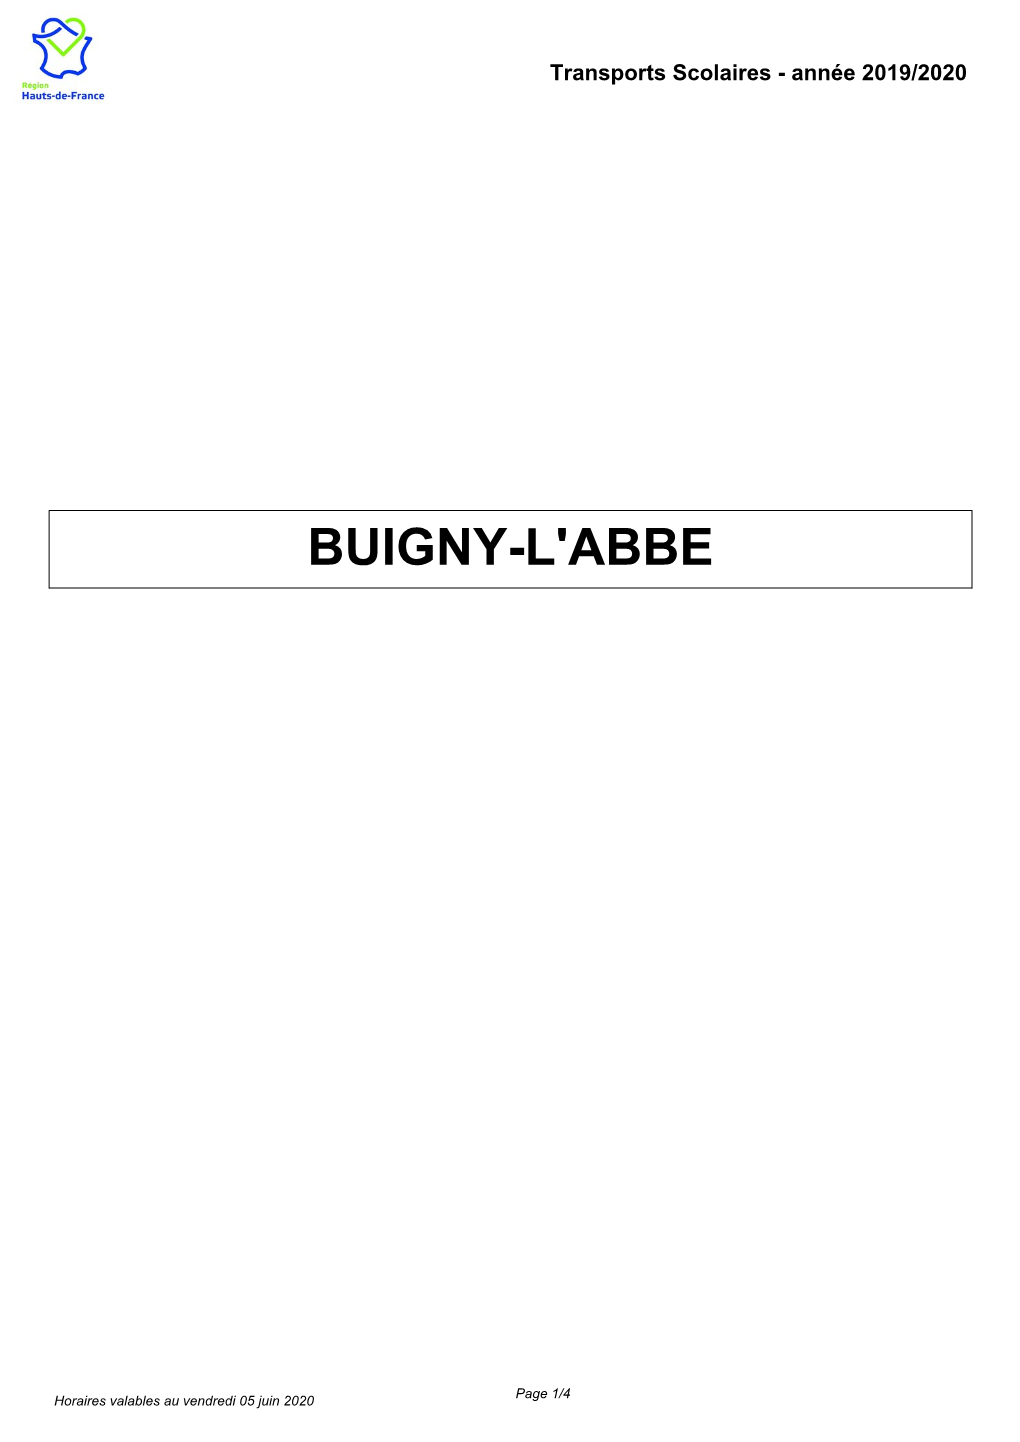 Buigny-L'abbe